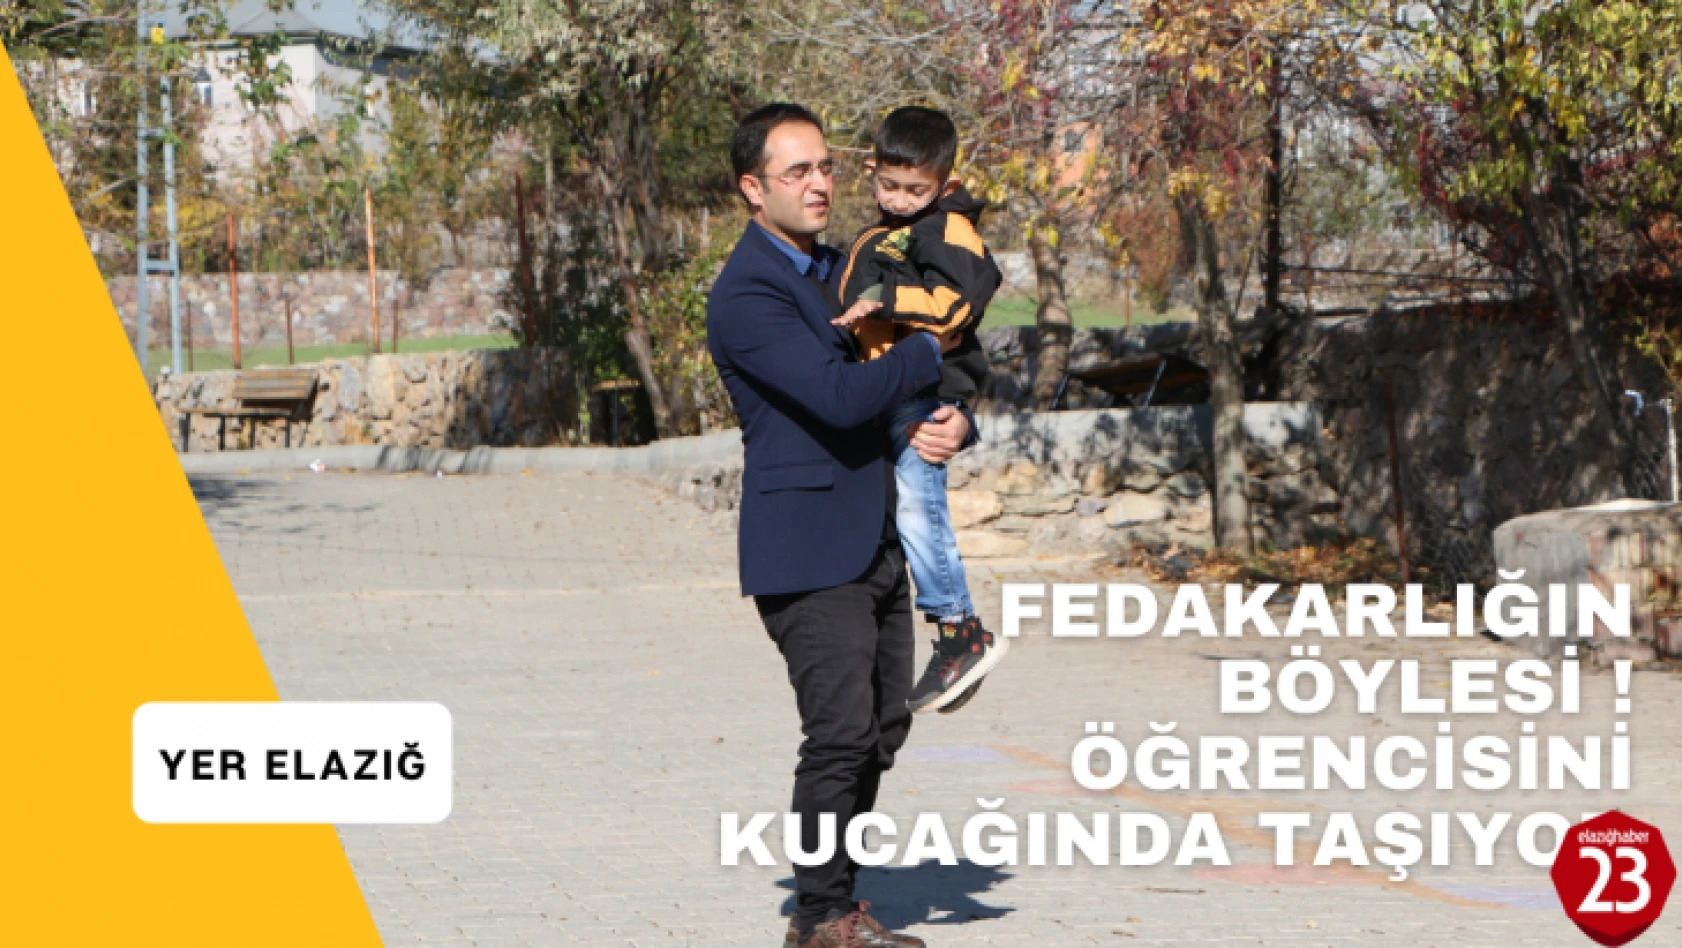 Arıcak'ta Bir Öğretmenin Fedakarlığı, Öğrencisini Kucağında Taşıyor